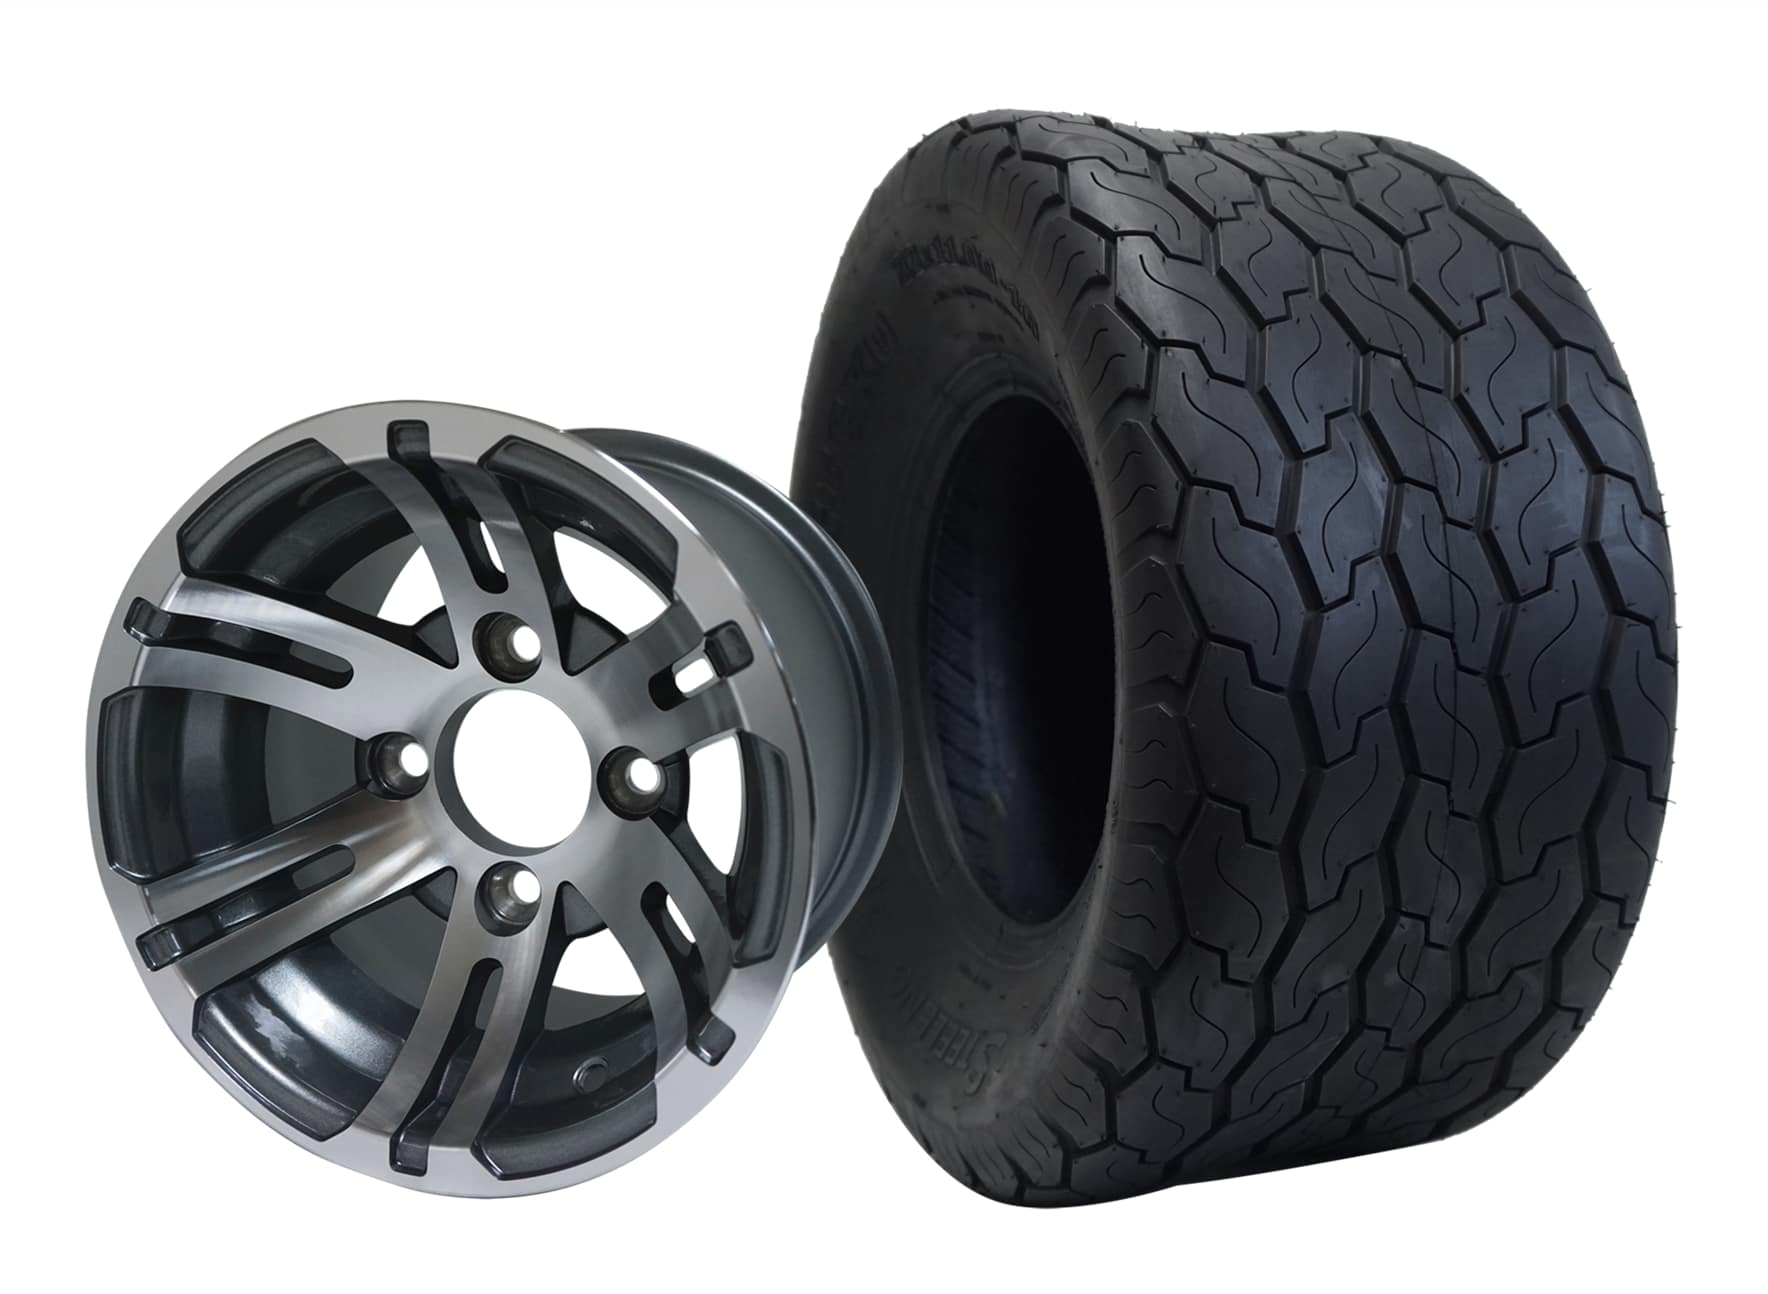 10" Bulldog Chrome Wheel Aluminum Allow & 18"x9"-10" Gecko All Terrain Tire x4